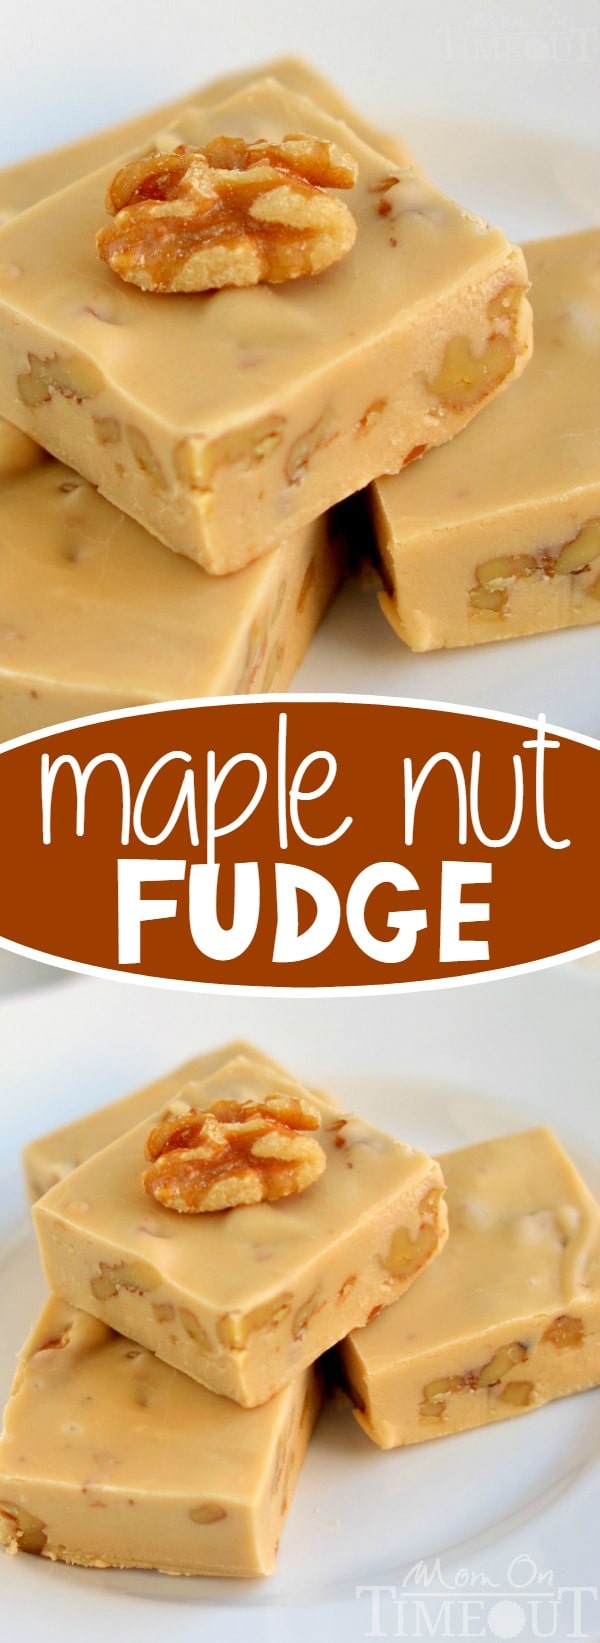 Nut Dessert Recipes: Maple Nut Fudge